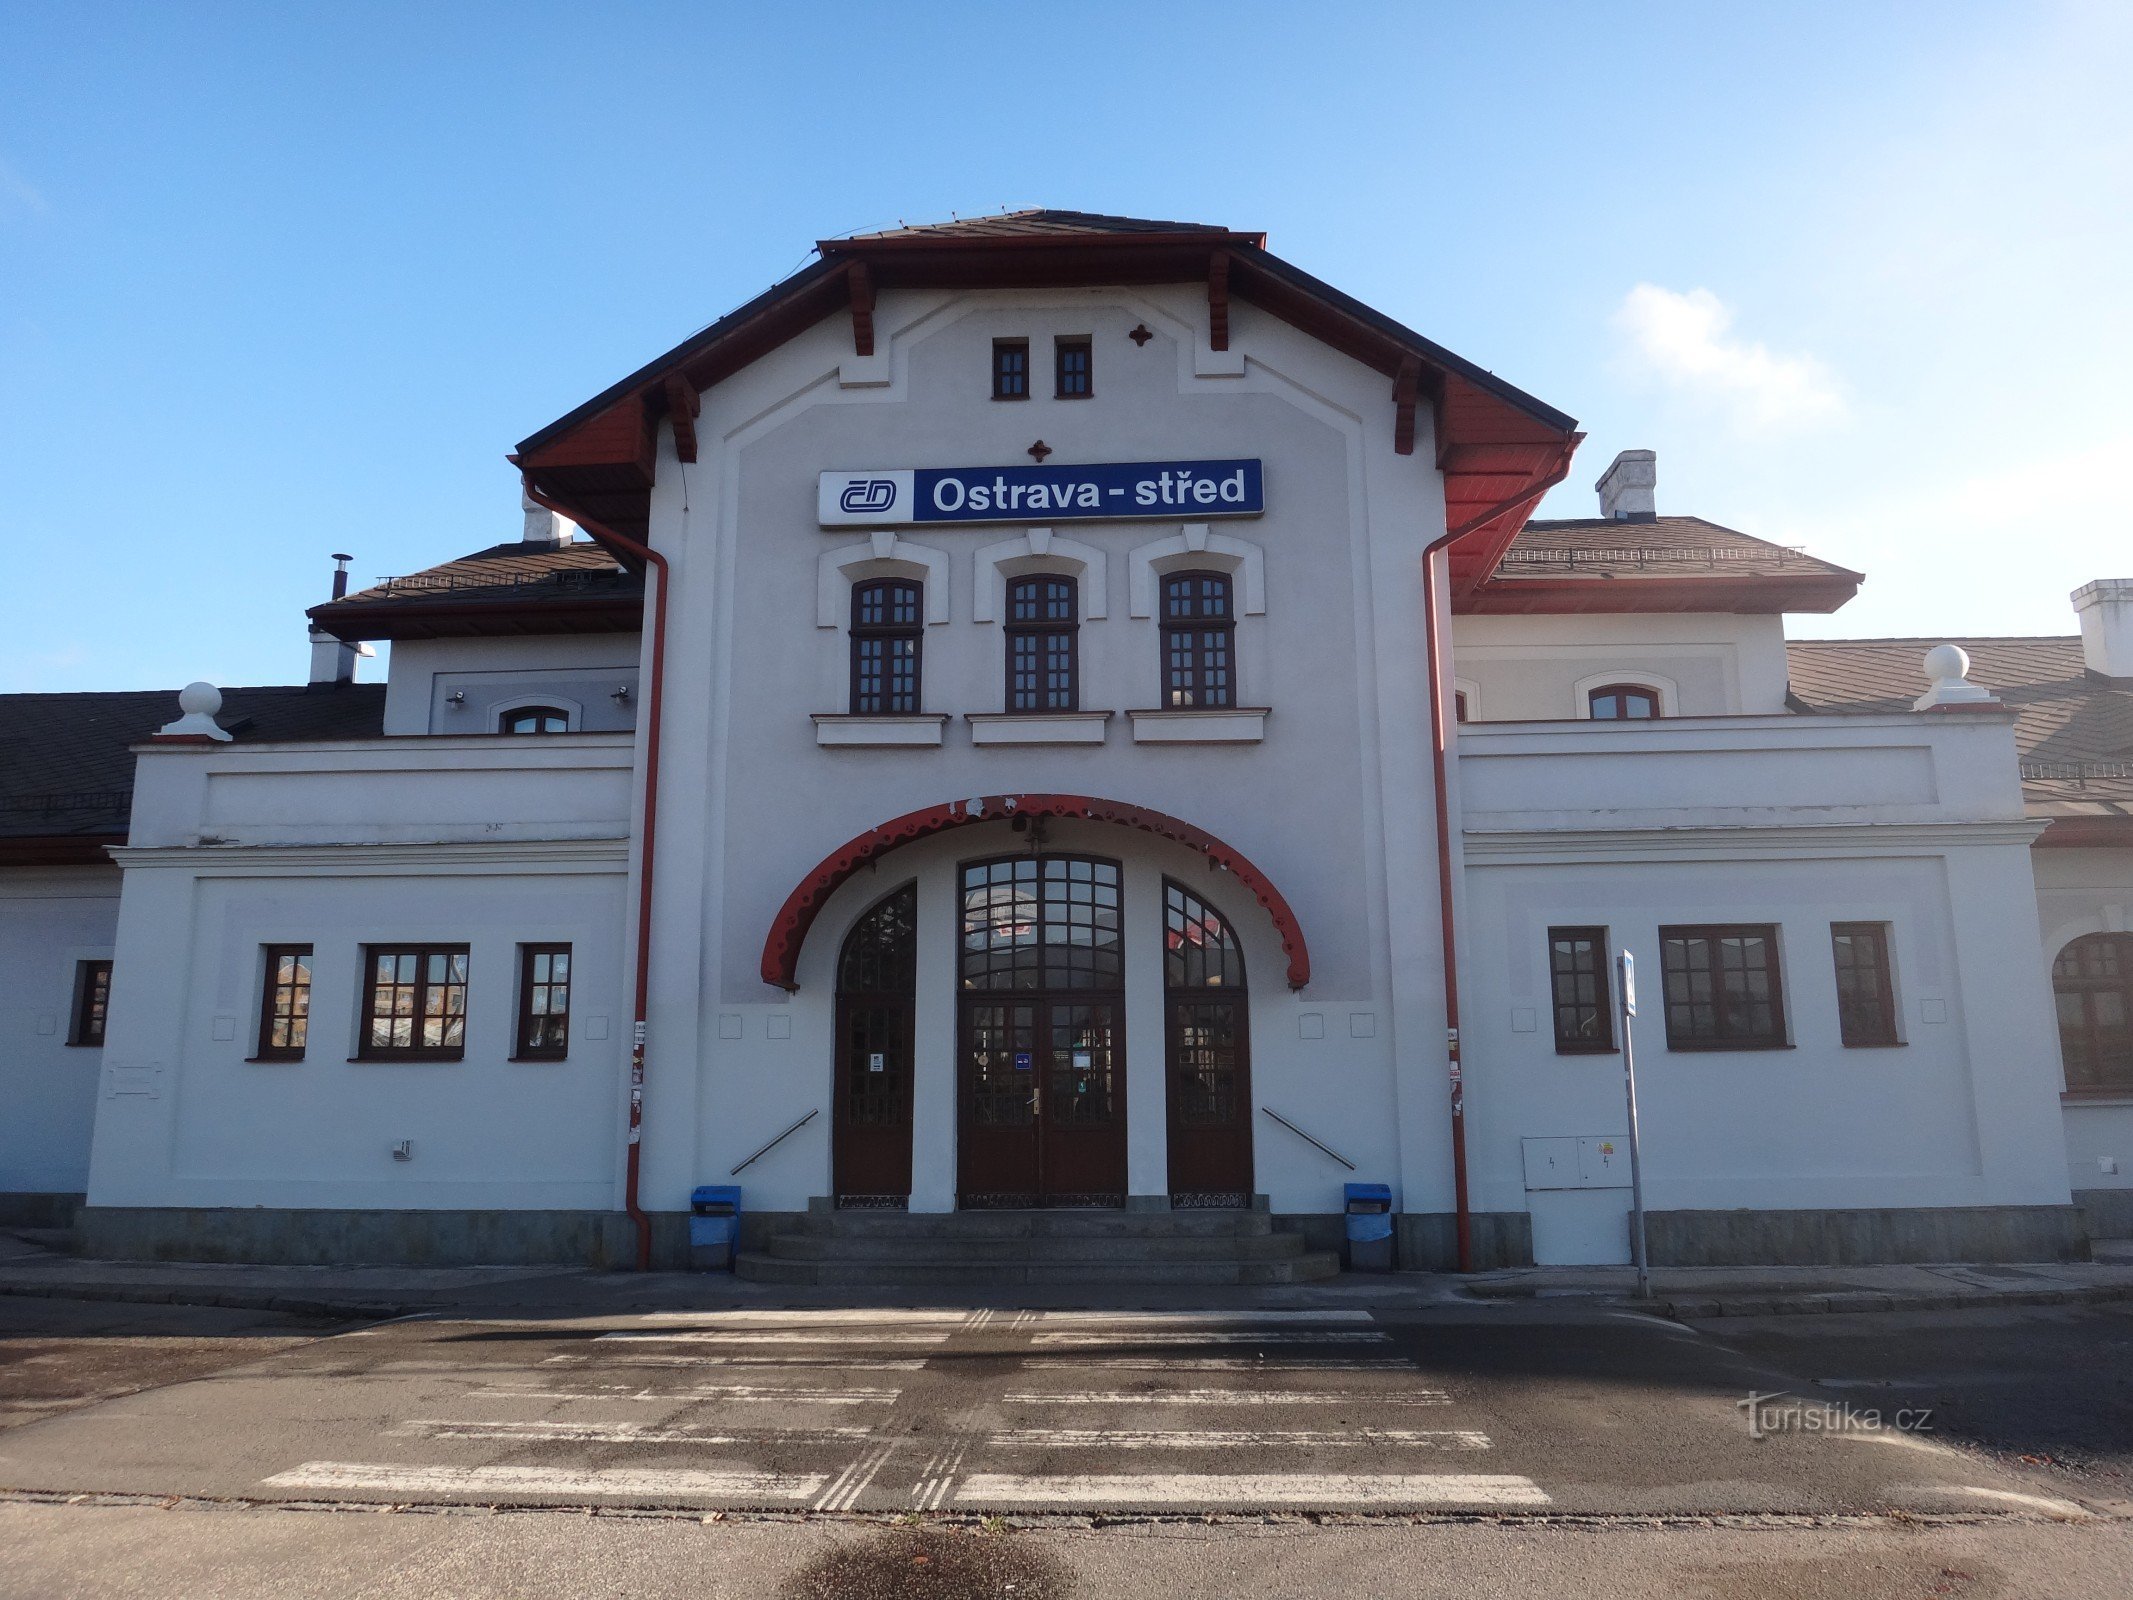 オストラヴァ通り鉄道駅と鉄道博物館の建物